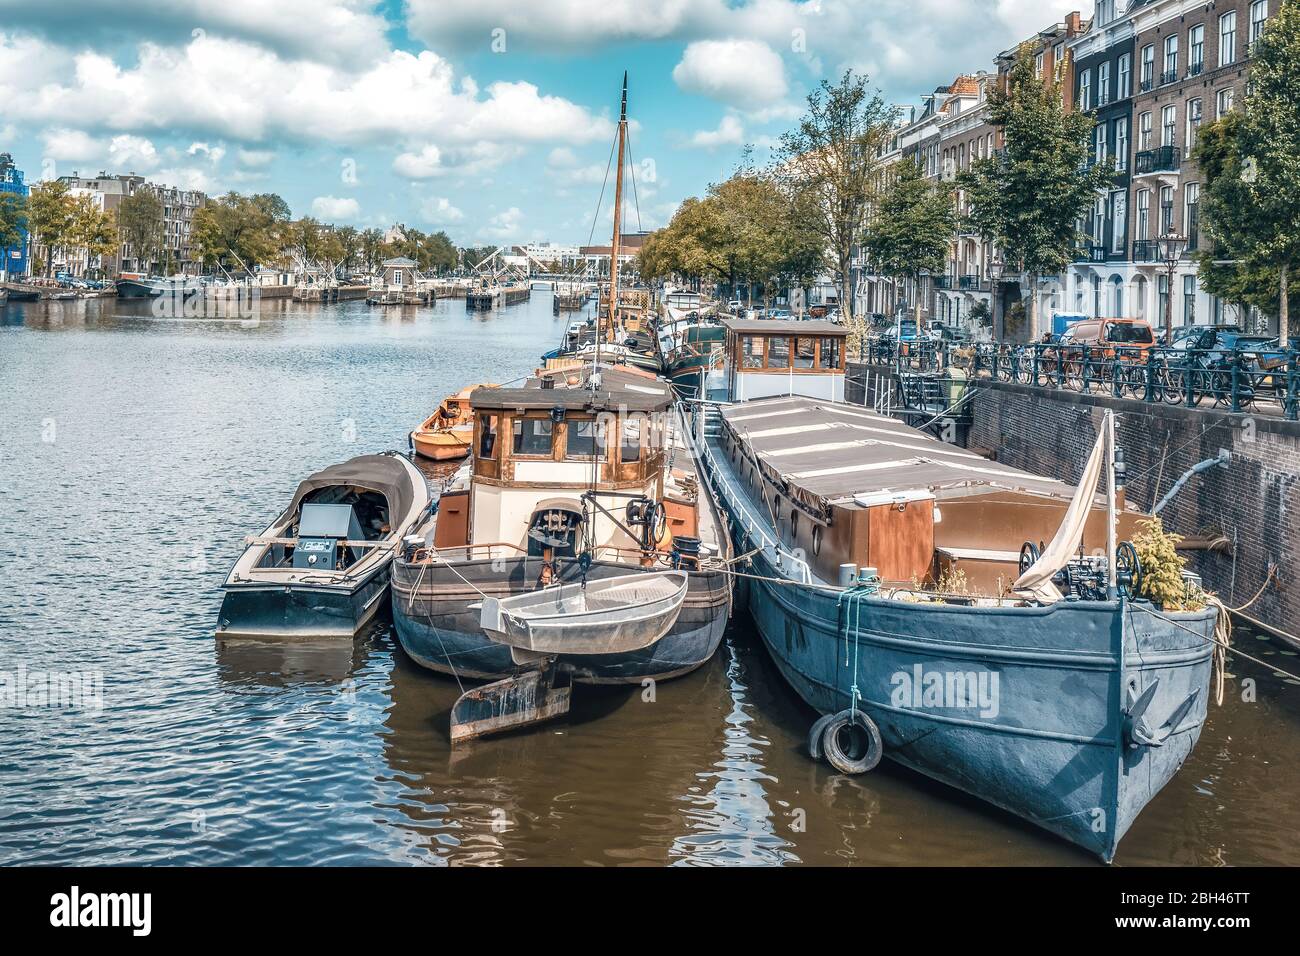 El barco holandés en el canal está atracado junto a un cuerpo de agua Foto de stock